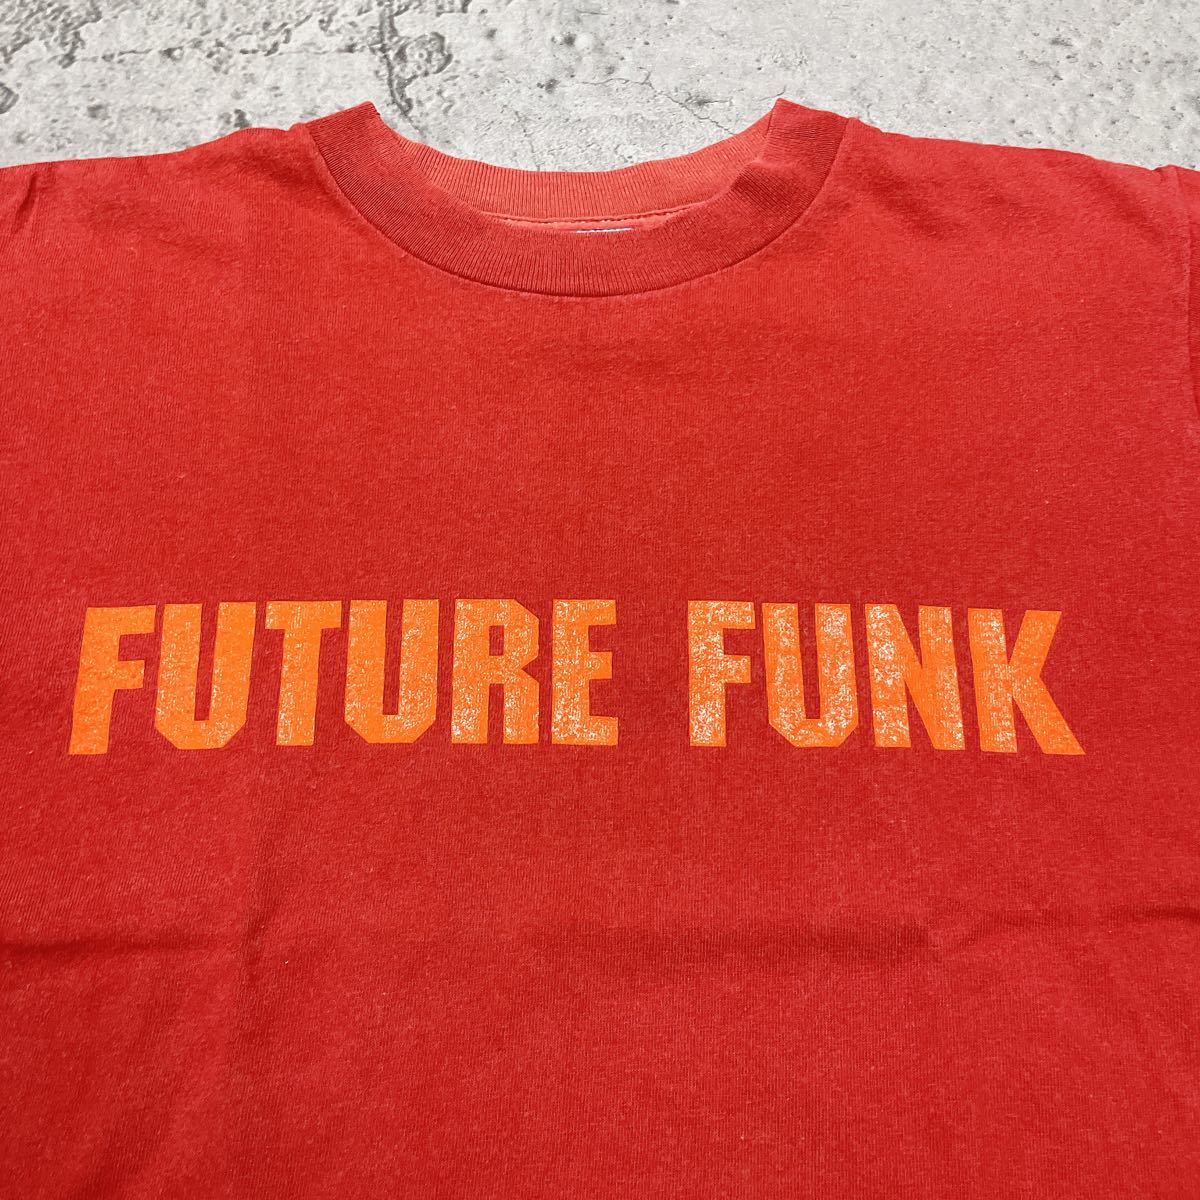 激レア 入手困難THE BIG BAND!! ツアーTシャツ バンドTシャツ ザビッグバンド future funk made in USA アメリカ製 いしだ壱成 玉FL1131_画像5